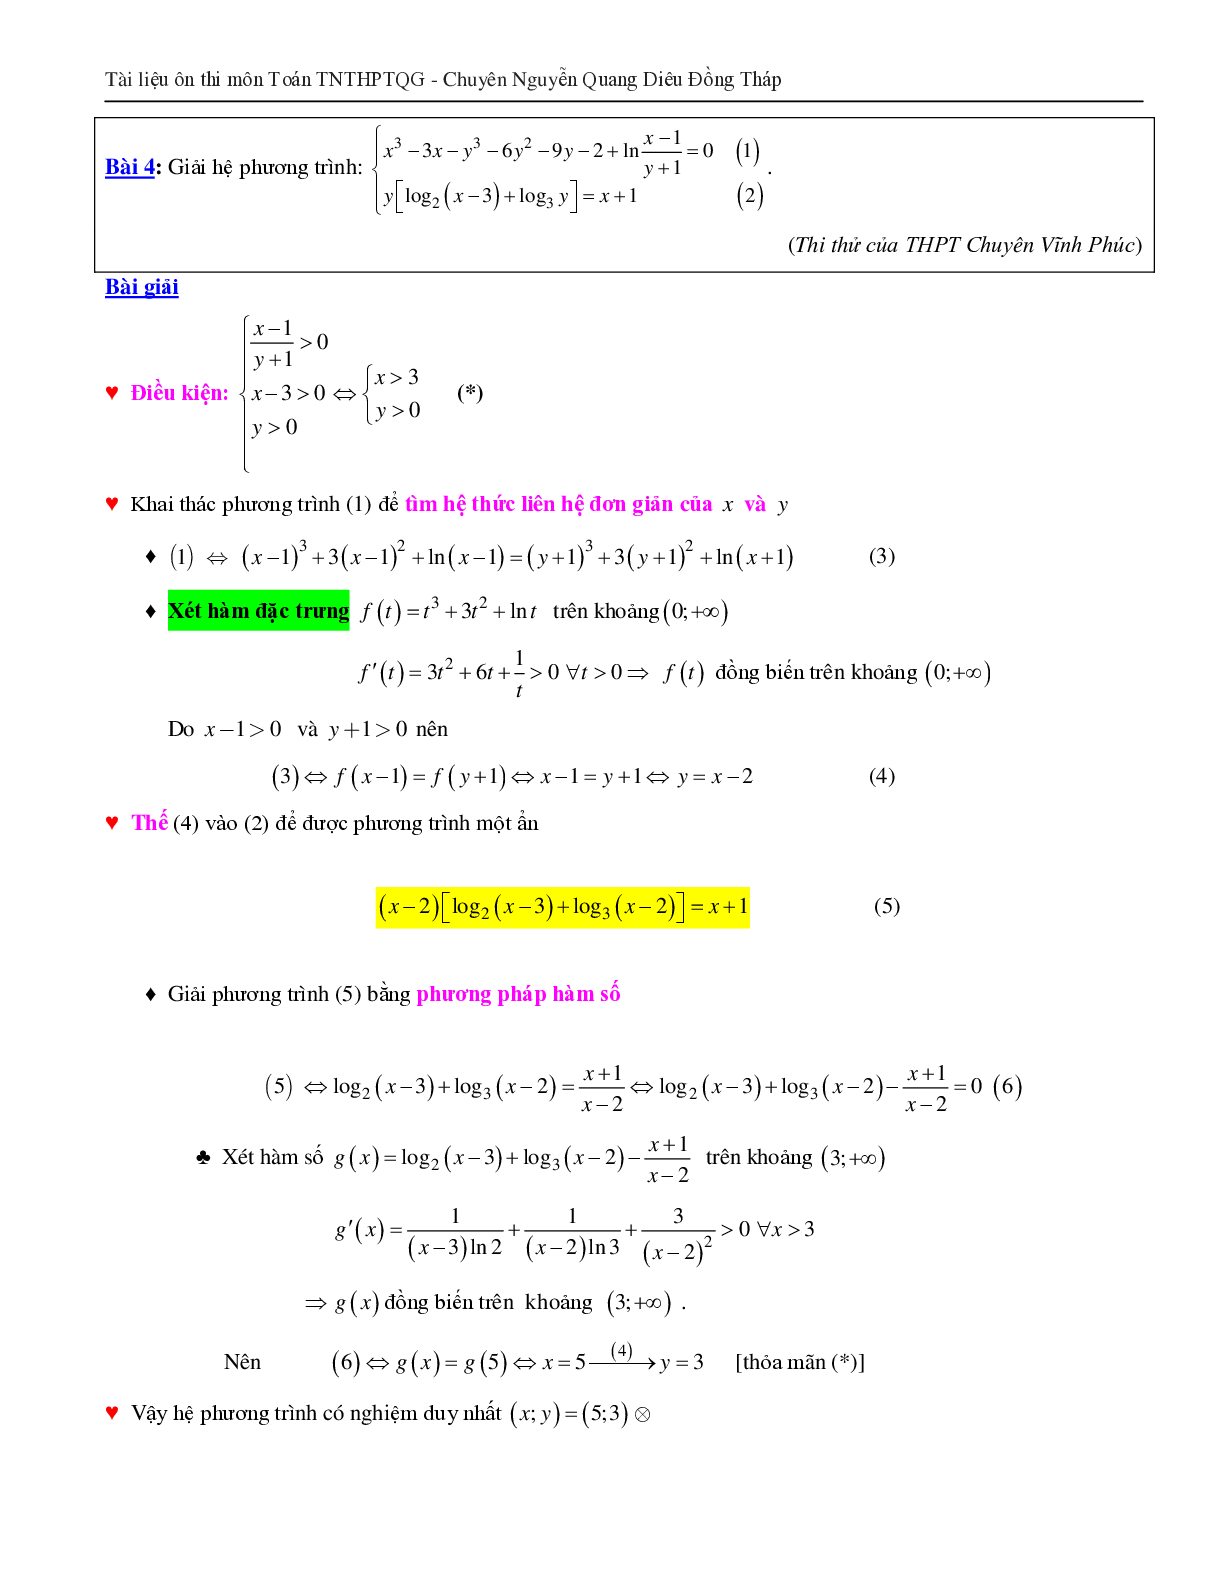 Giải hệ phương trình bằng phương pháp hàm số (trang 5)